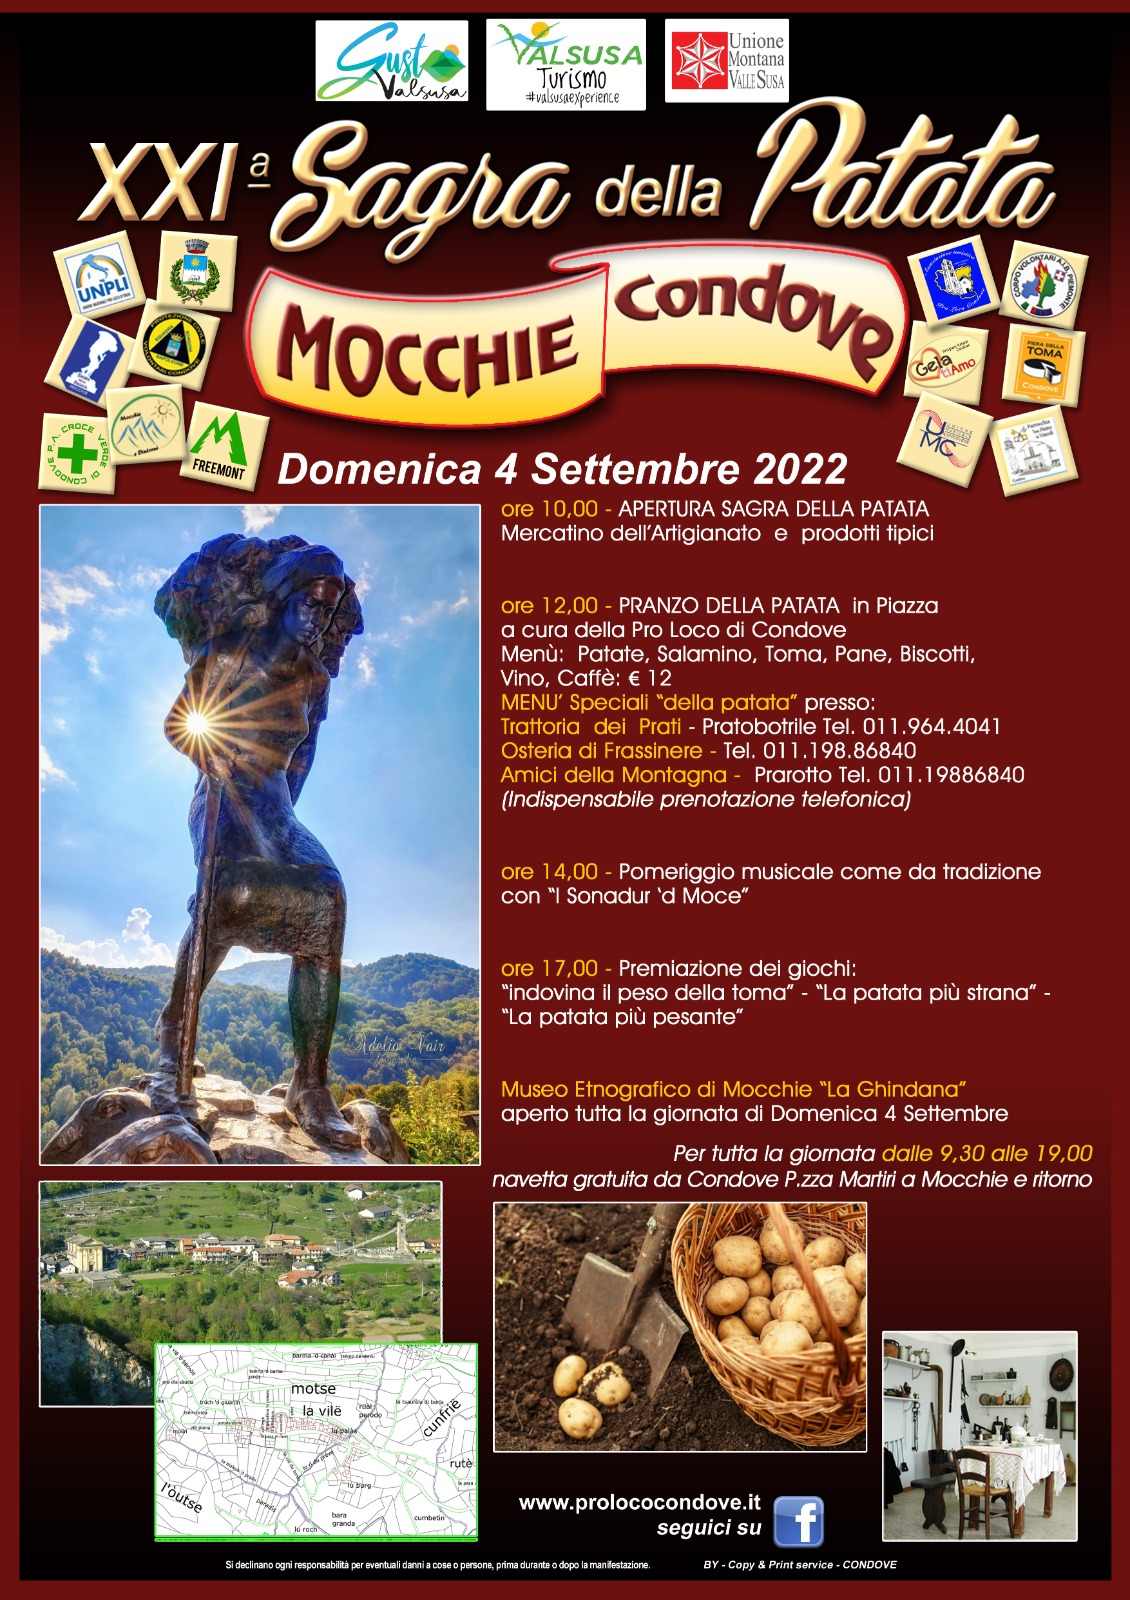 Mocchie (TO)
"XXI^ Sagra della Patata"
4 Settembre 2022
